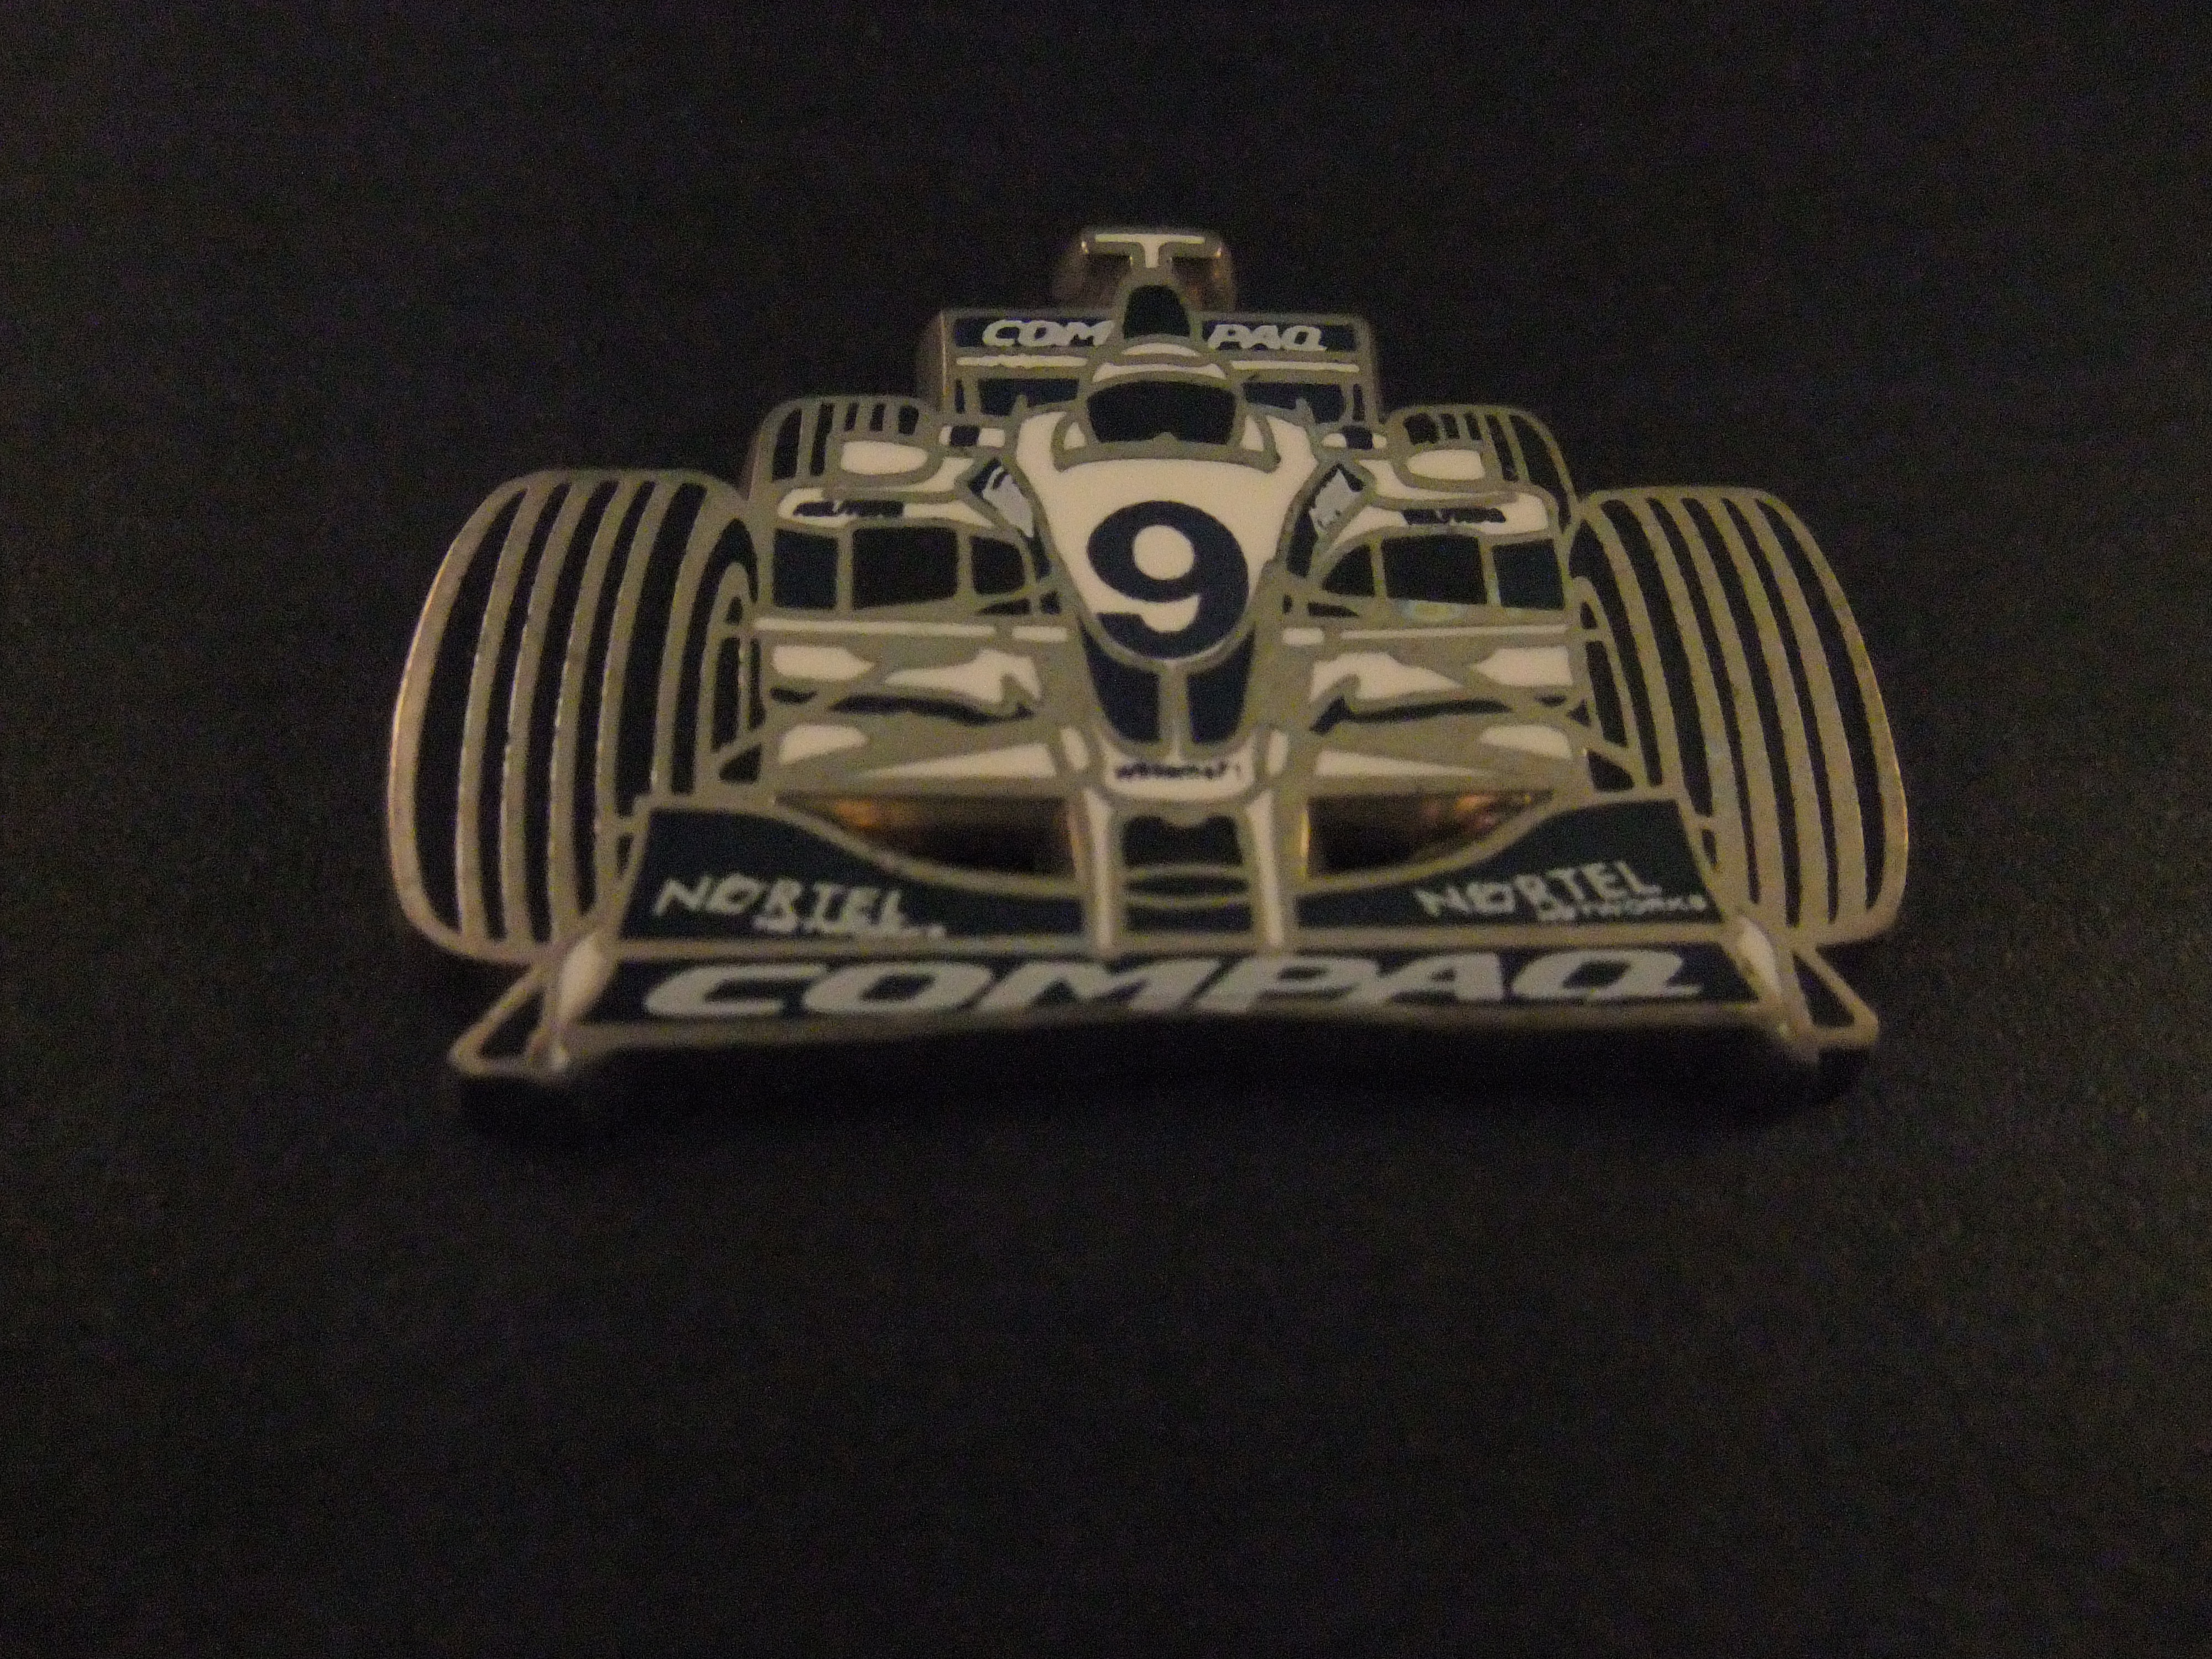 Formule 1 racewagen (BMW) Williams team (Ralf Schumacher in het F1 seizoen van 1999